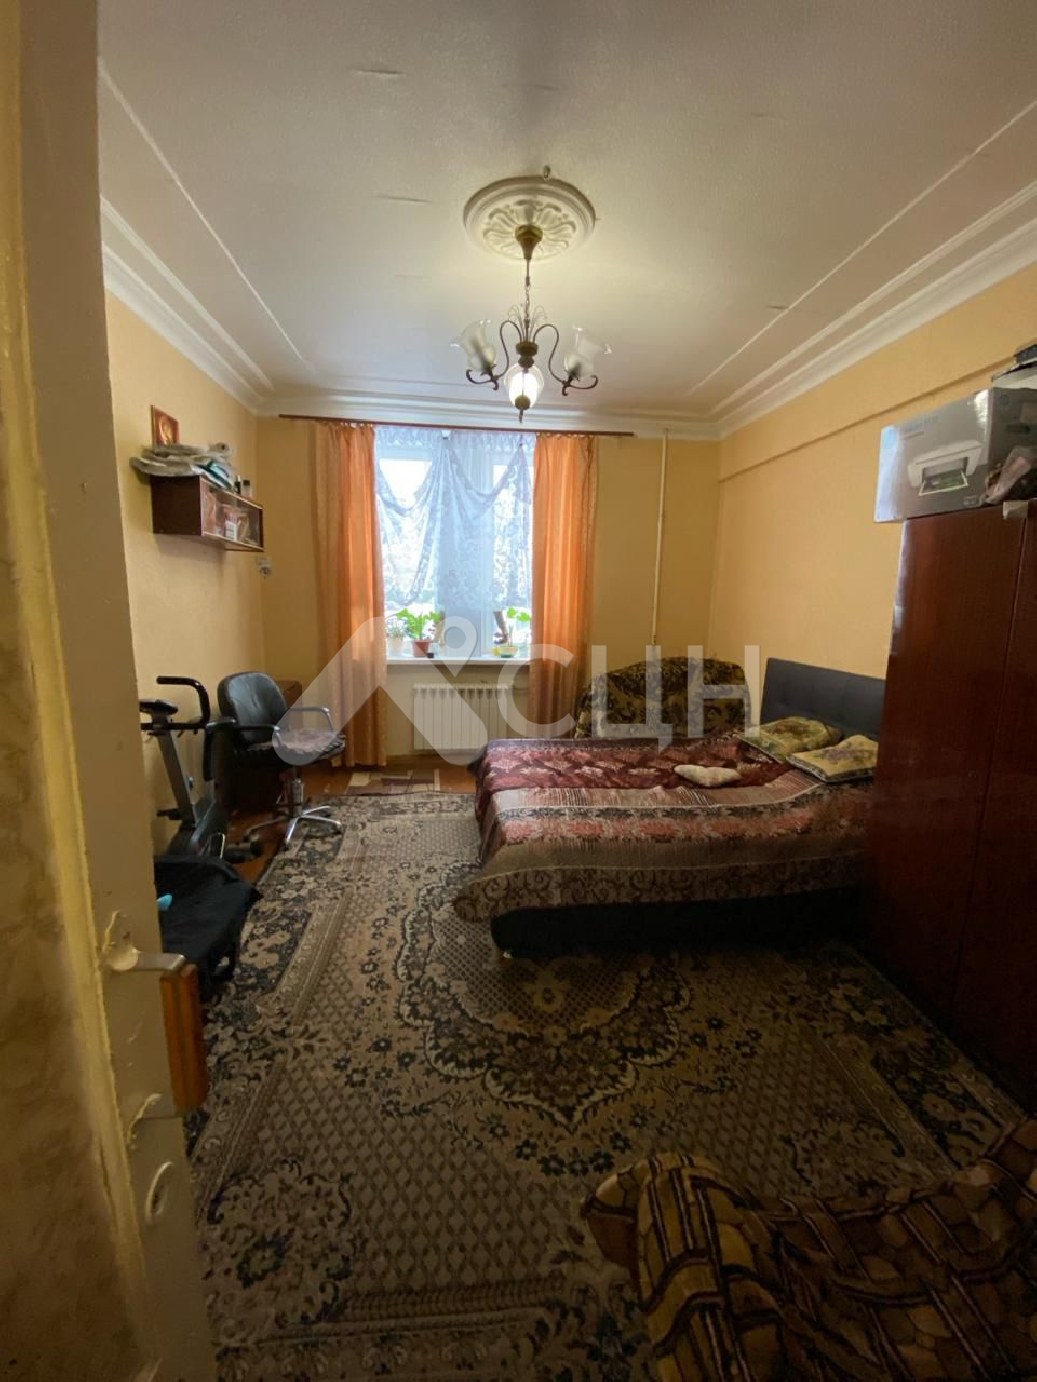 снять квартиру в сарове
: Г. Саров, Шевченко ул. д. 20, 3-комн квартира, этаж 1 из 3, продажа.